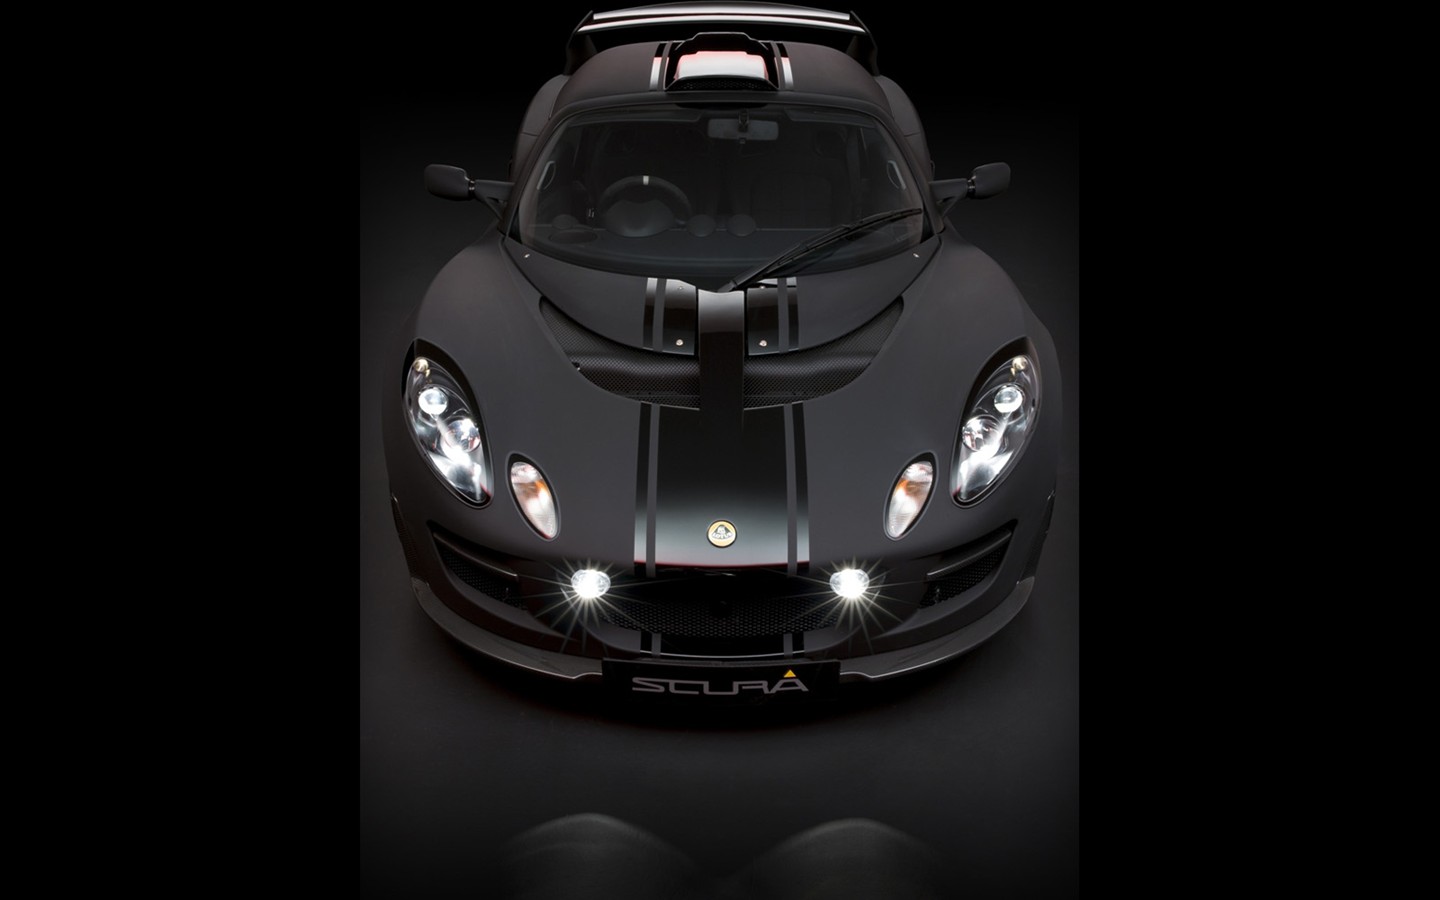 2010 Lotus-Sportwagen in limitierter Auflage Tapete #7 - 1440x900